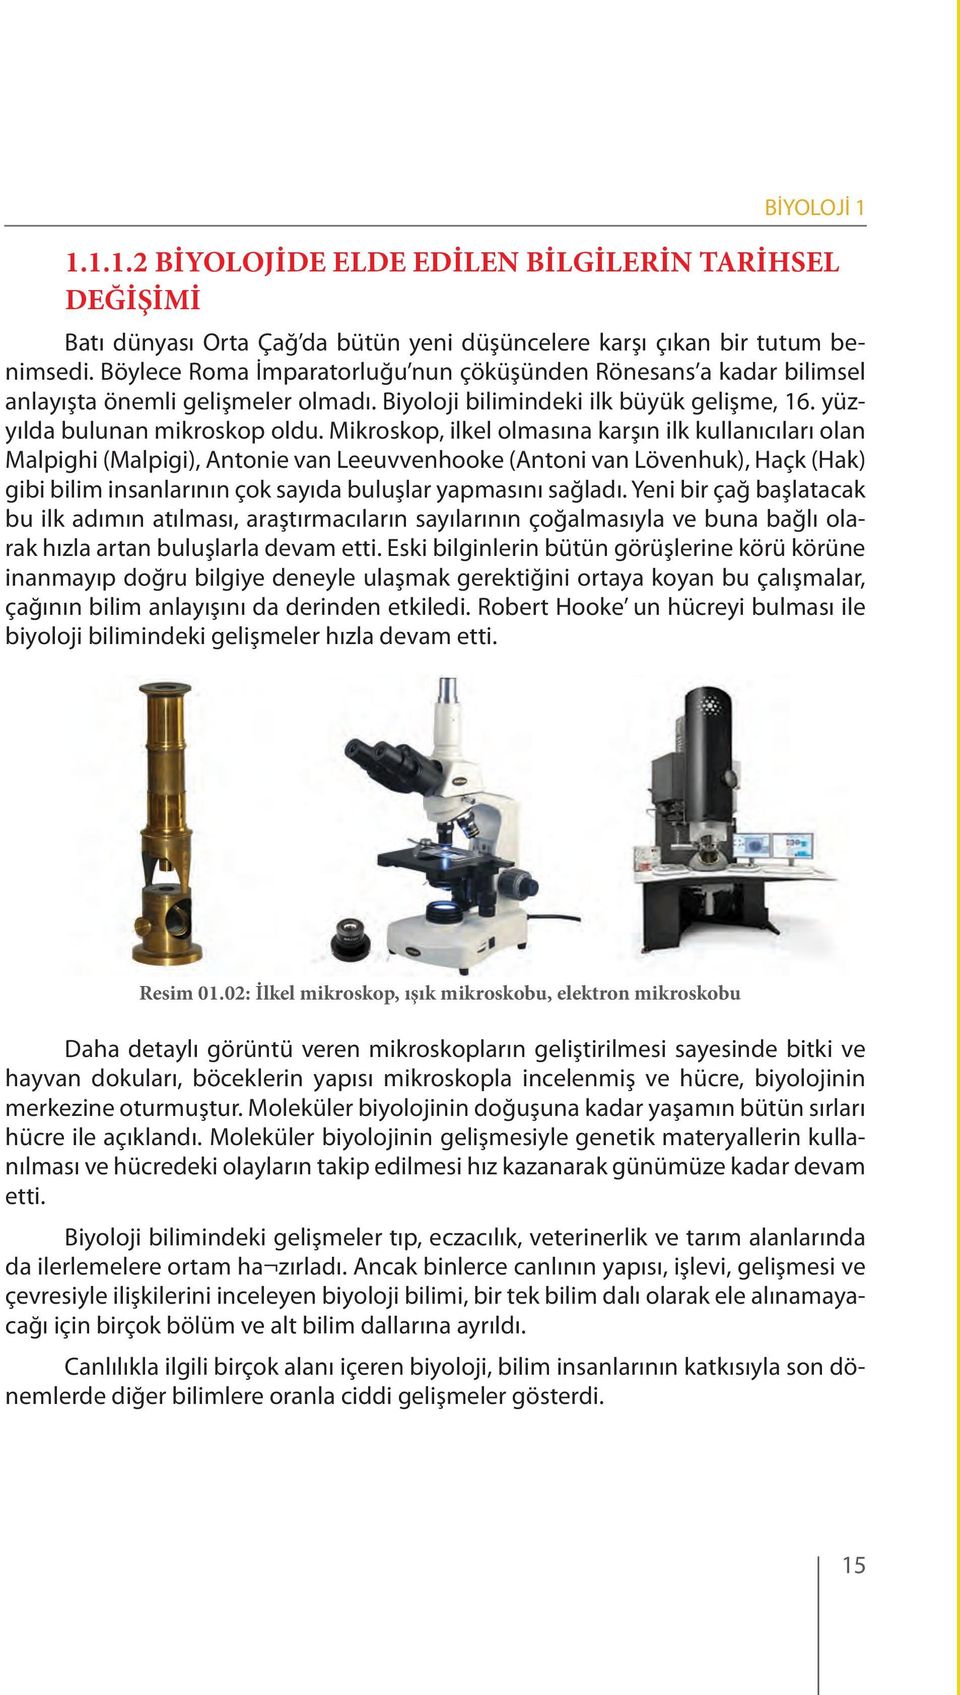 Mikroskop, ilkel olmasına karşın ilk kullanıcıları olan Malpighi (Malpigi), Antonie van Leeuvvenhooke (Antoni van Lövenhuk), Haçk (Hak) gibi bilim insanlarının çok sayıda buluşlar yapmasını sağladı.